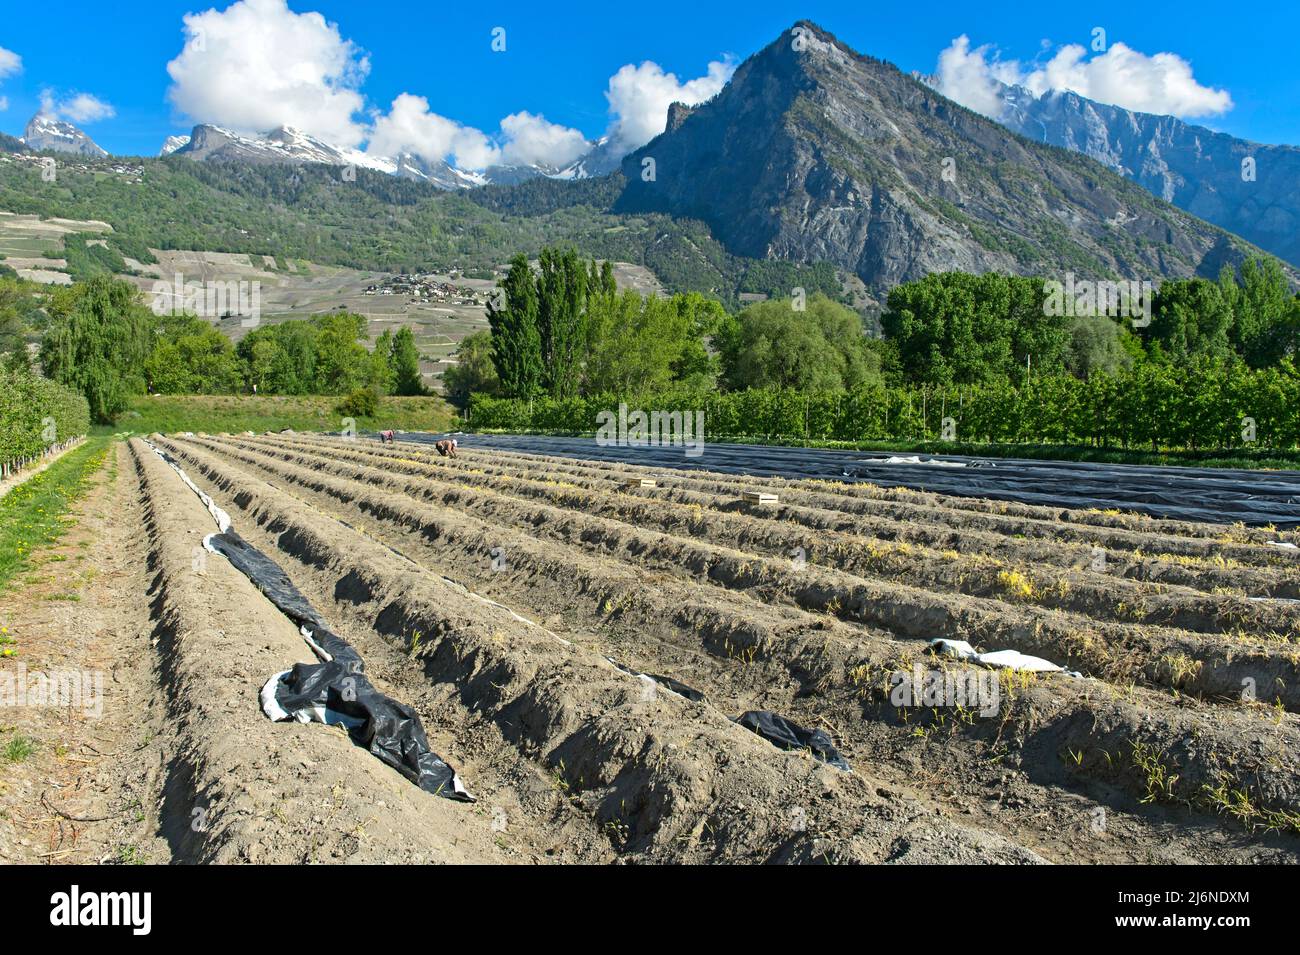 Campo de espárragos de la empresa agrícola Philfruits en el valle del Ródano, Riddes, Valais, Suiza Foto de stock